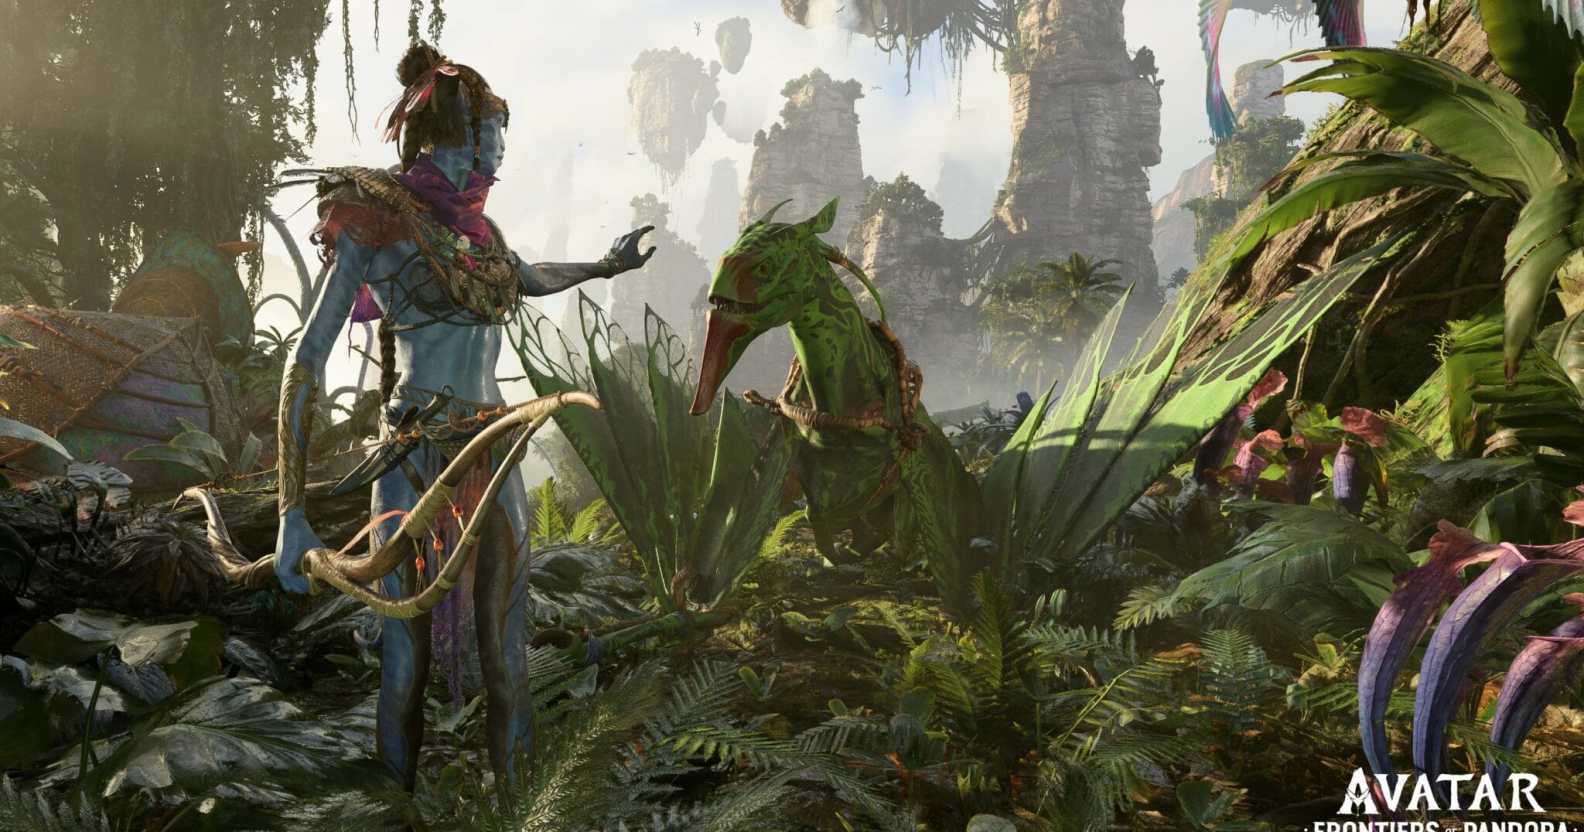 Avatar Frontiers of Pandora đã cho ra mắt và mang đến những trải nghiệm tuyệt vời cho người chơi. Với đồ họa chân thực, câu chuyện tuyệt vời và khả năng tương tác đầy tinh tế, đây là một trò chơi không thể bỏ qua đối với những ai yêu thích phim Avatar. Hãy khám phá thế giới mới đầy màu sắc của Avatar Frontiers of Pandora.